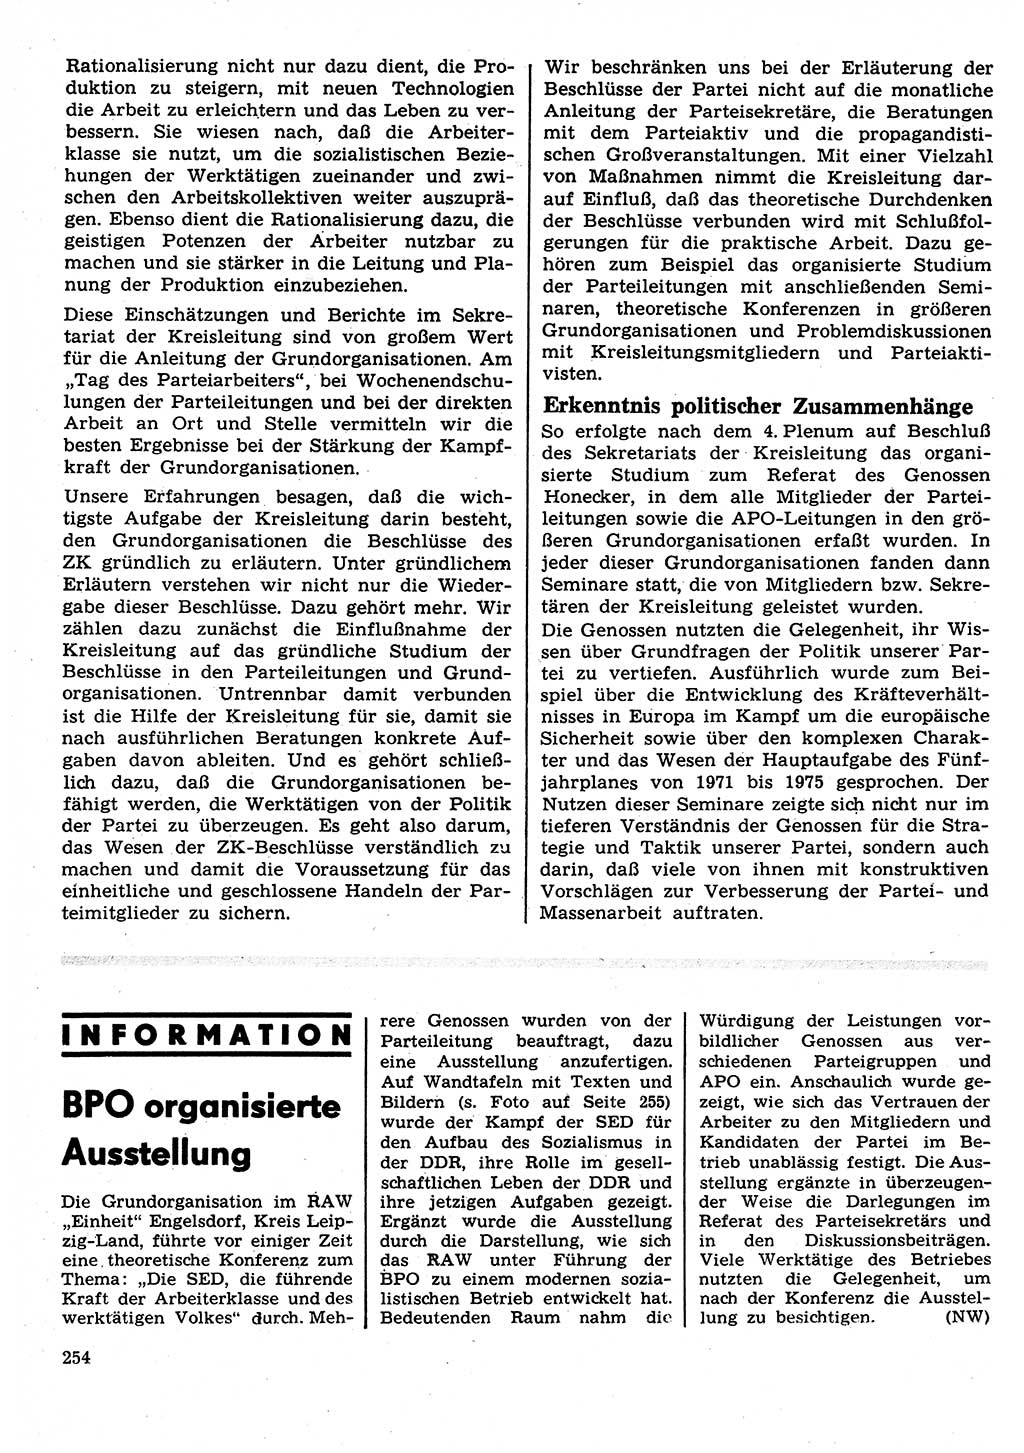 Neuer Weg (NW), Organ des Zentralkomitees (ZK) der SED (Sozialistische Einheitspartei Deutschlands) für Fragen des Parteilebens, 27. Jahrgang [Deutsche Demokratische Republik (DDR)] 1972, Seite 254 (NW ZK SED DDR 1972, S. 254)